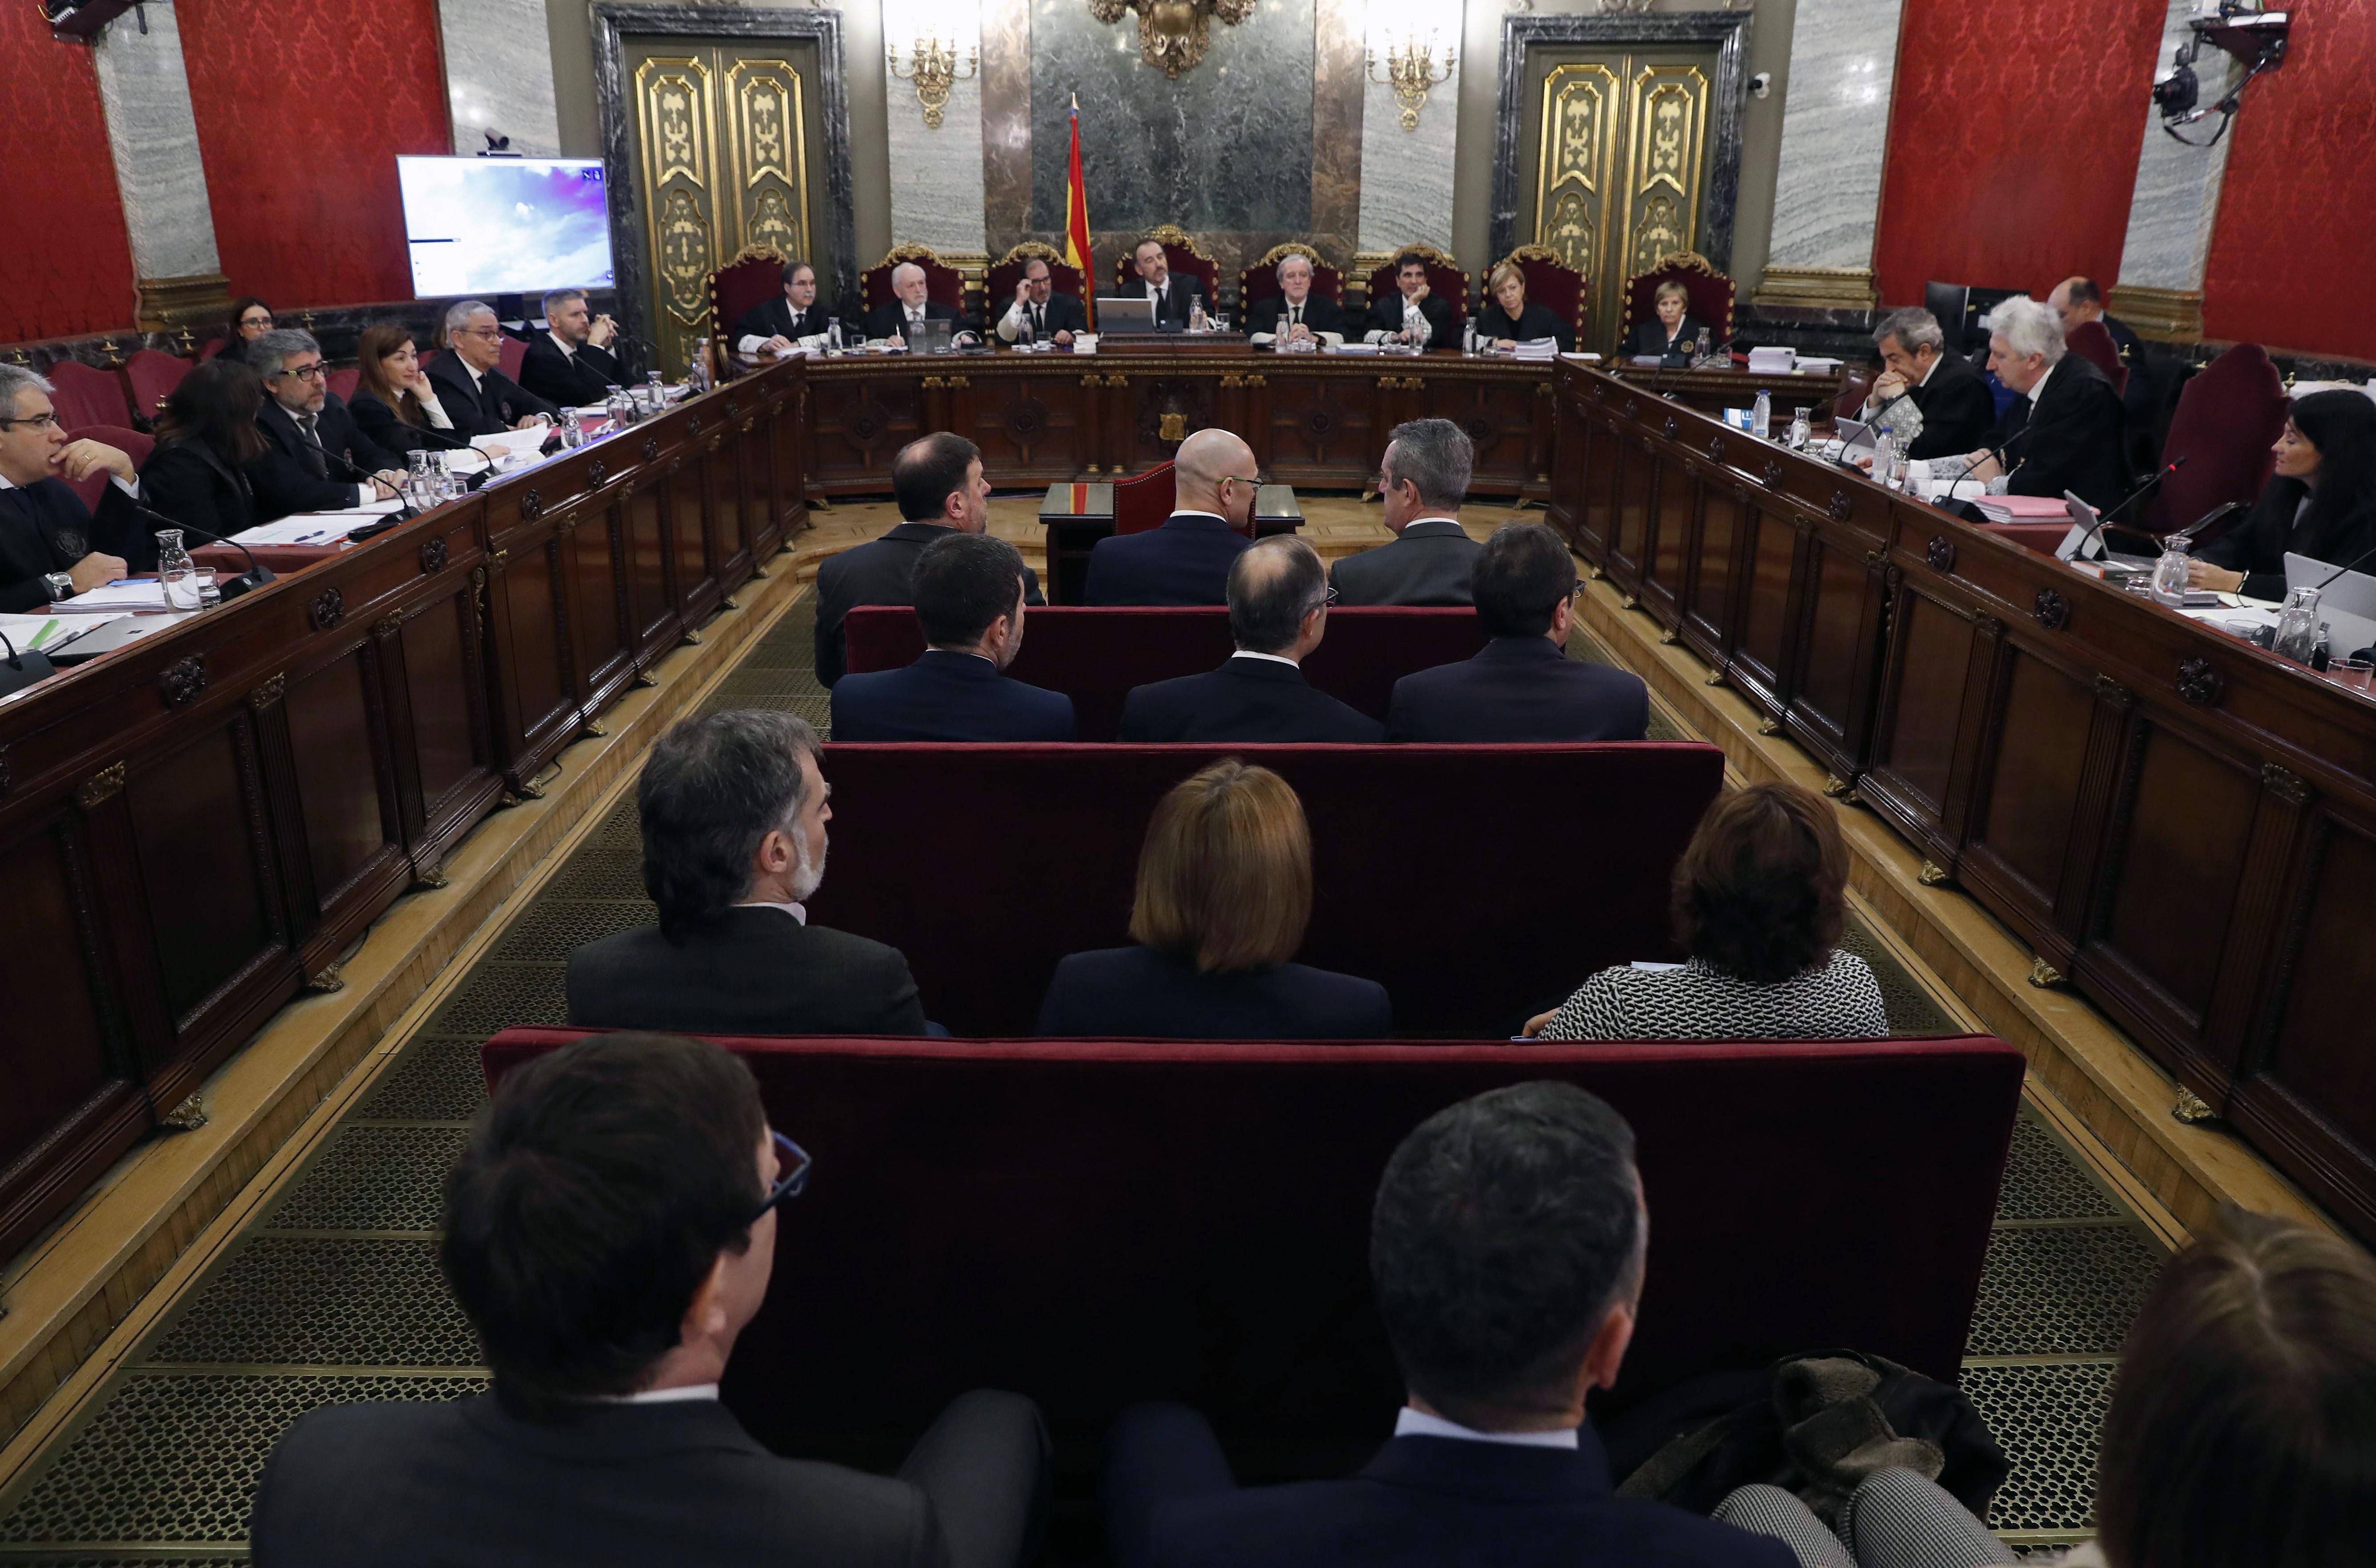 Los doce líderes independentistas acusados por el proceso soberanista catalán. Fuente: EP.